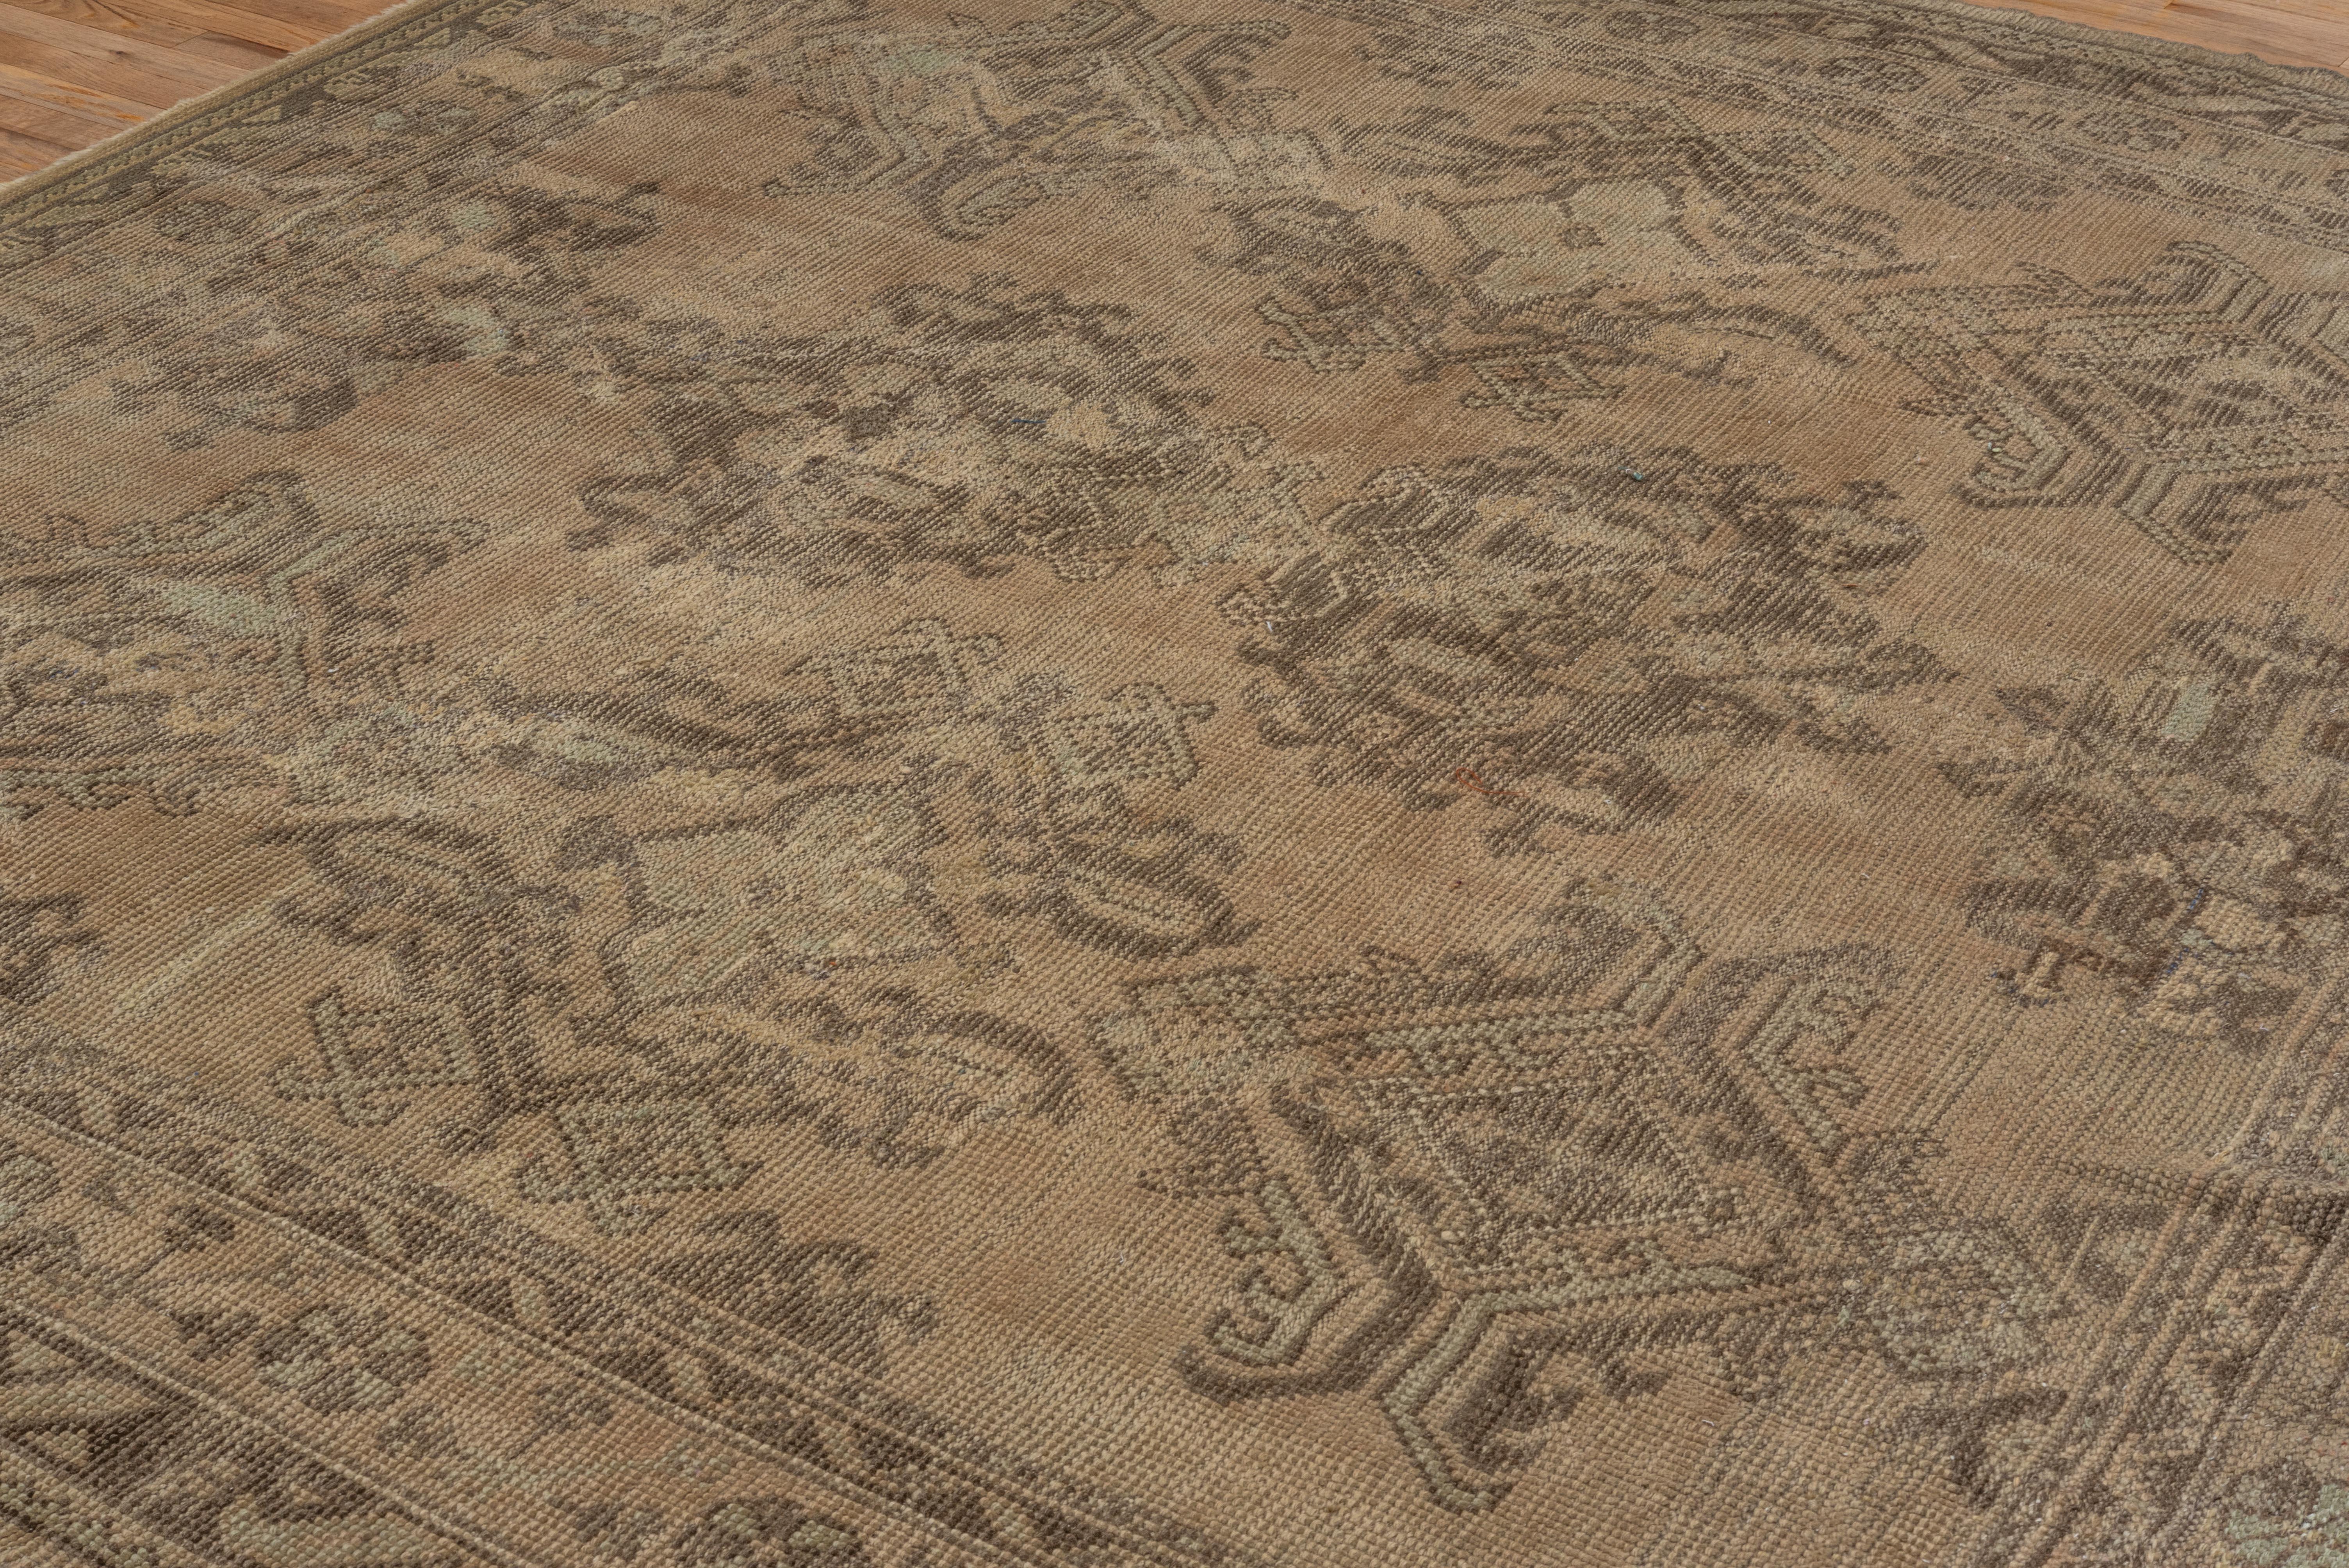 Dieser türkische Oushak-Teppich, der von Hand geknüpft wurde, ist eine unvergleichliche Antiquität.  Dieses Stück ist mit glänzenden Medaillons im Mittelfeld und reichhaltigen Mustern versehen. Dieser Teppich ist in einem erstaunlichen Zustand, wenn